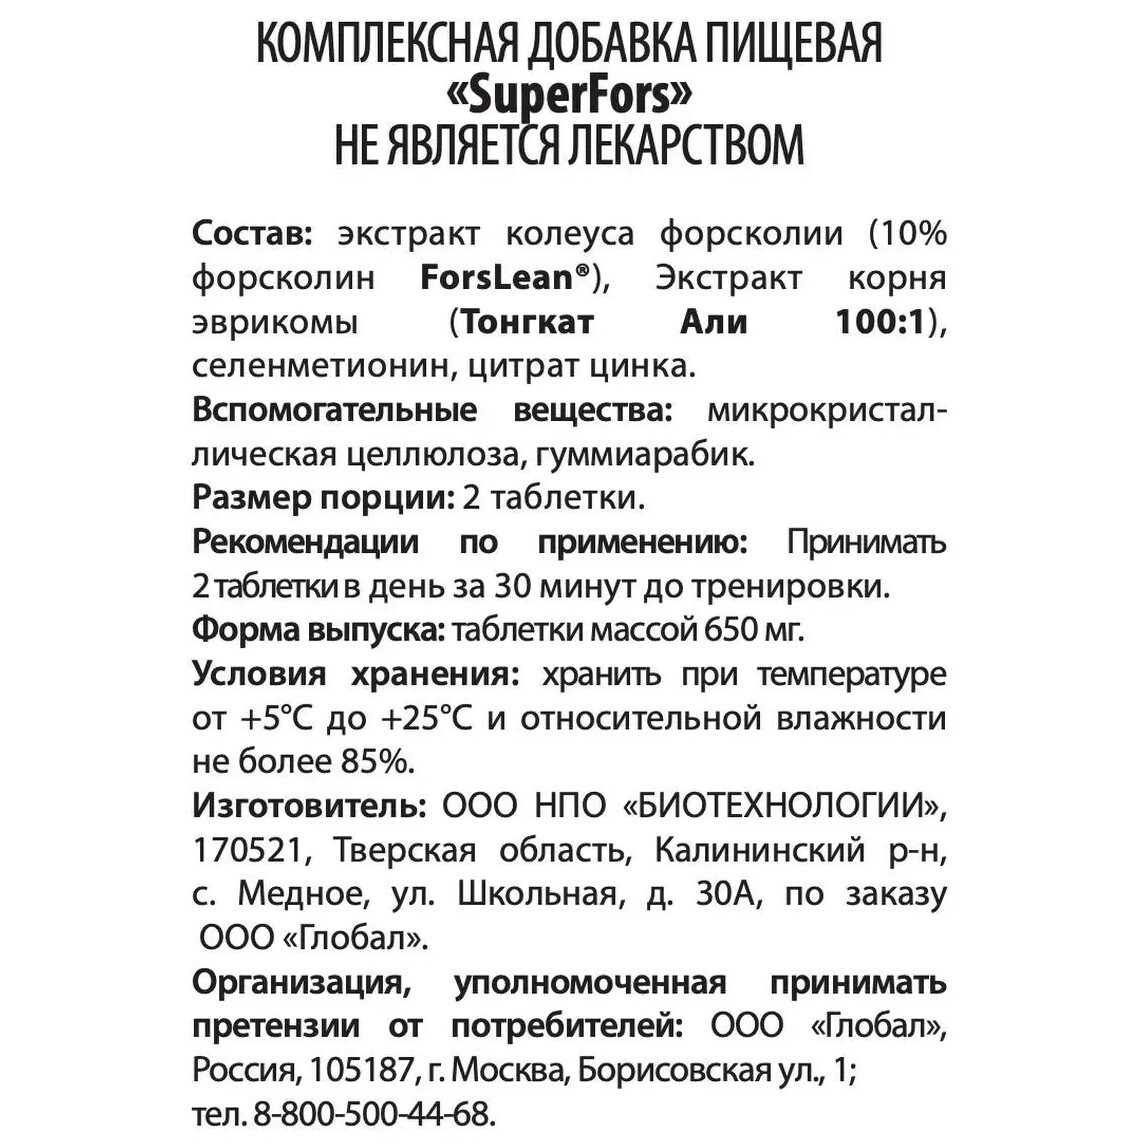 WellMe Комплексная добавка пищевая SuperFors, (60 таблеток, 500 мг) - купить в Москве за 2 500 руб. | SkincareShop